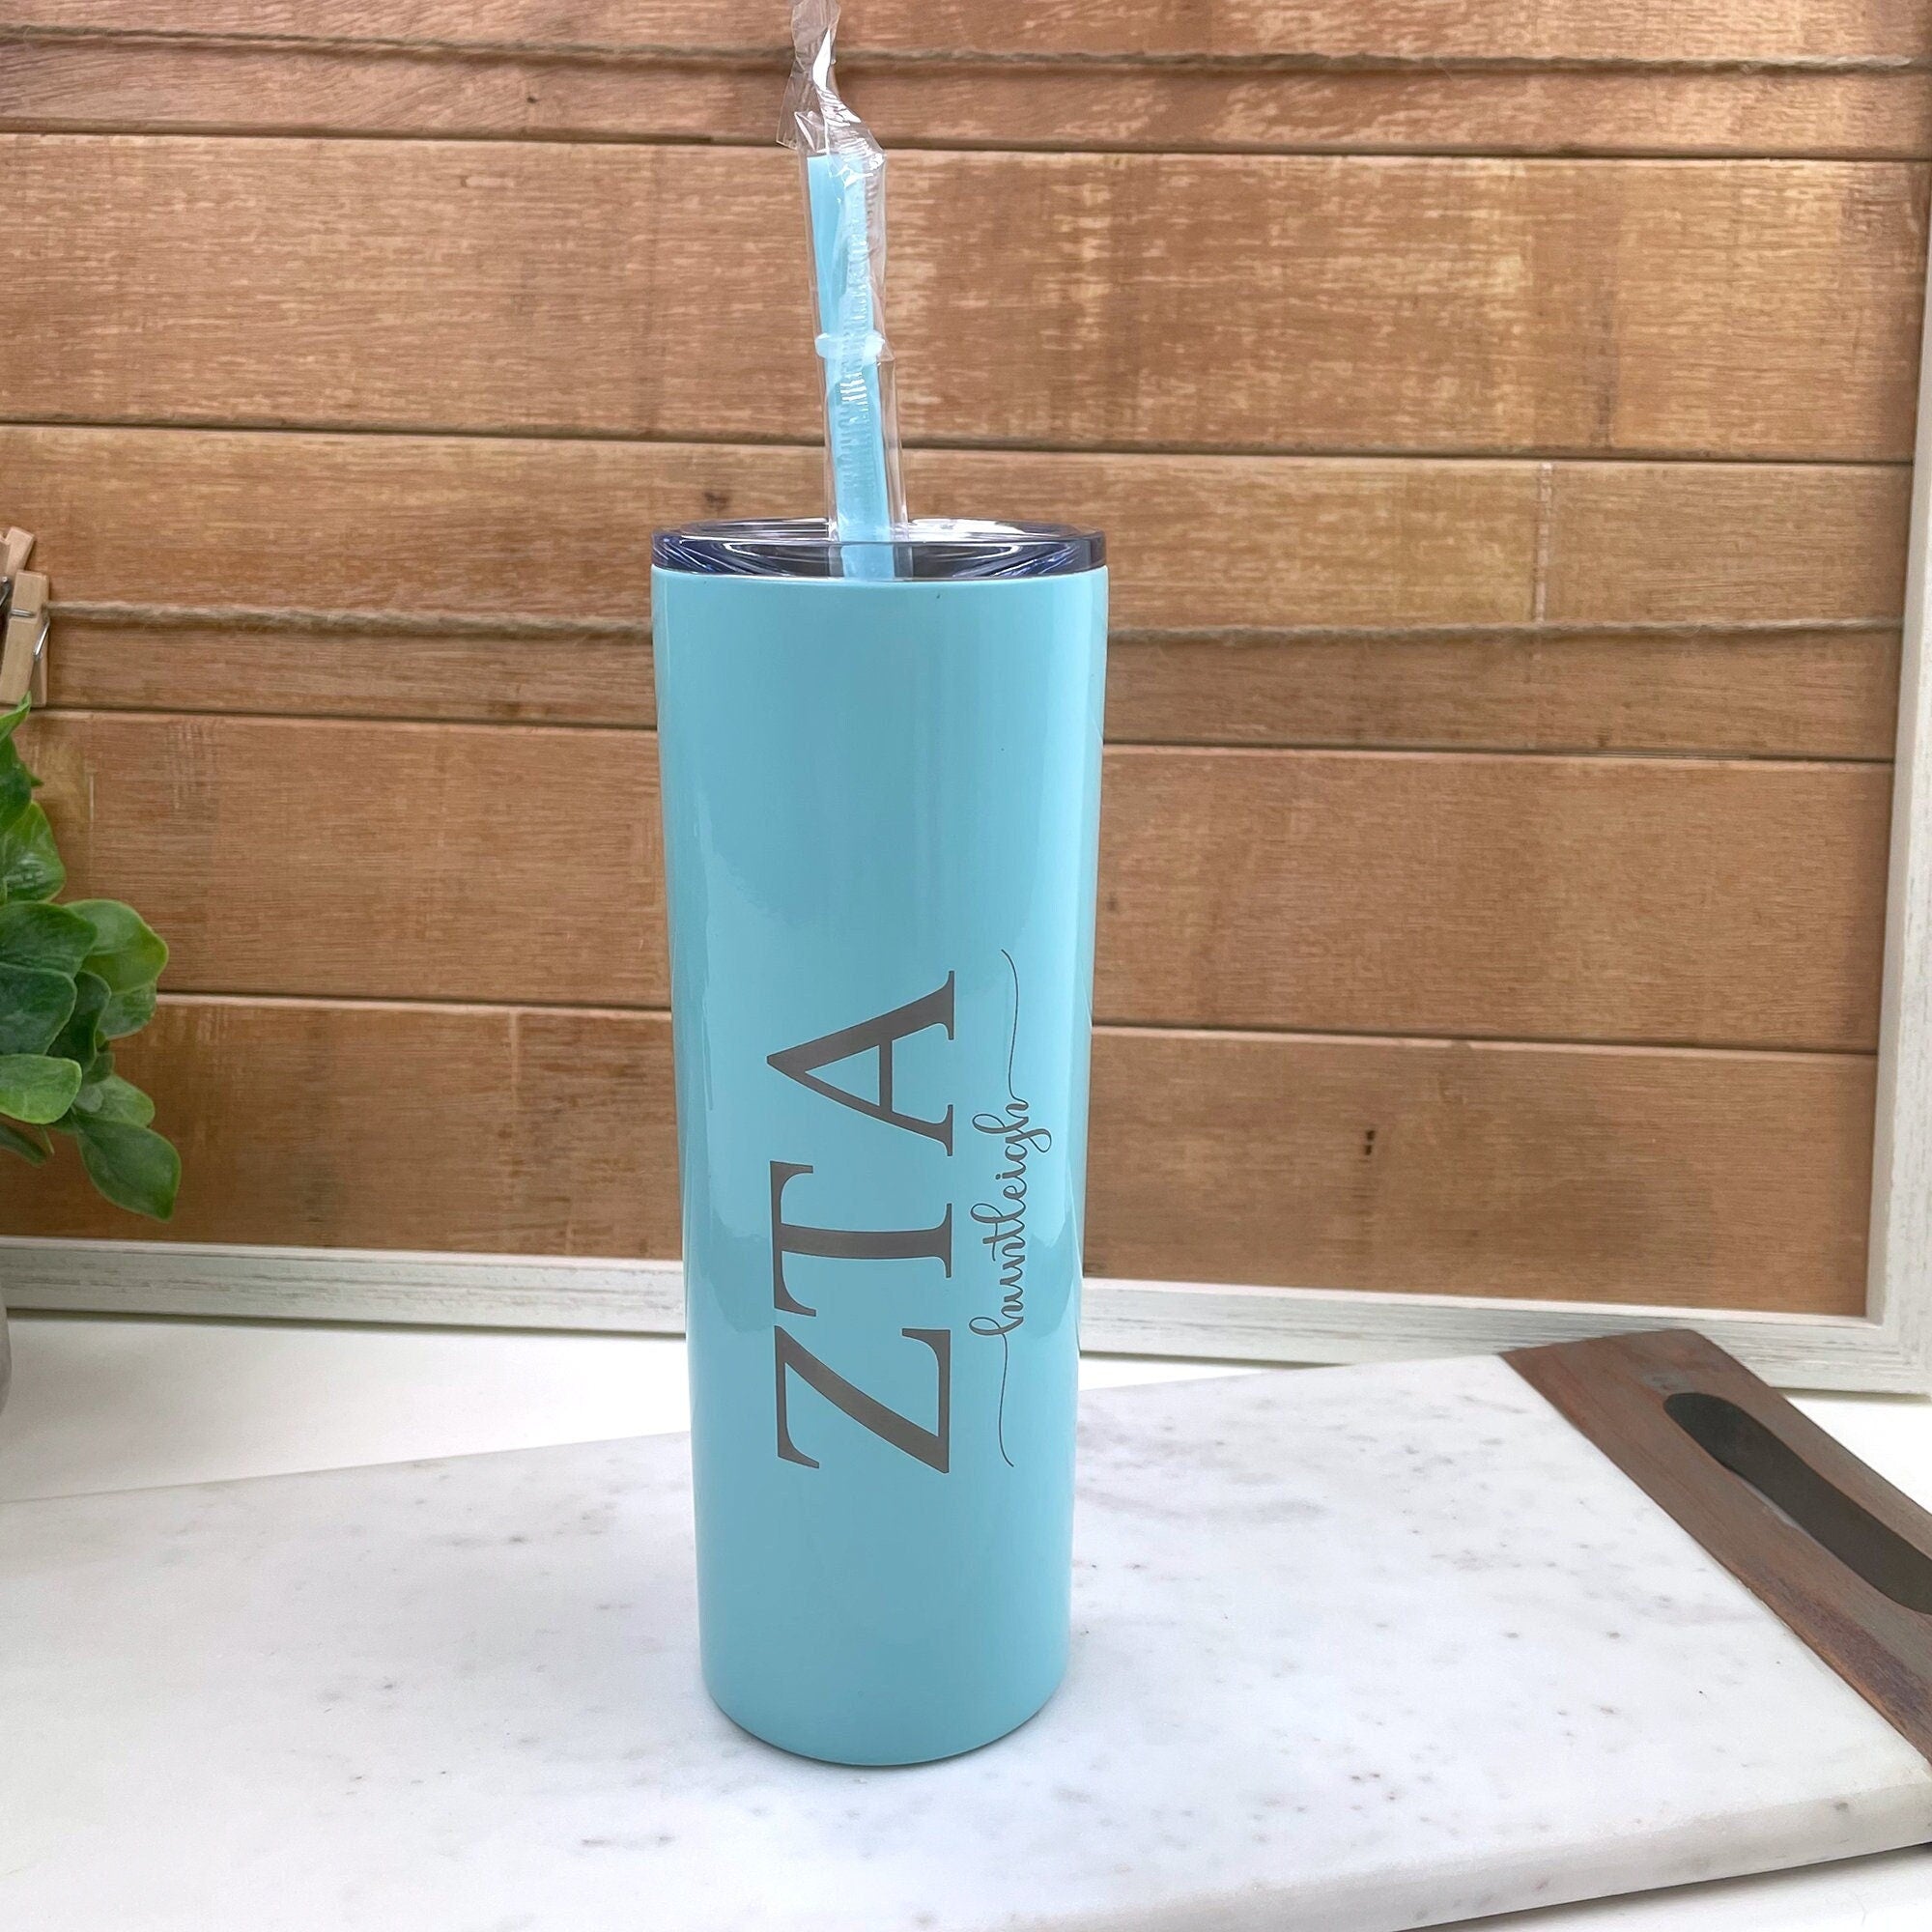 Zeta Tau Alpha - Personalized Skinny Tumbler with Straw